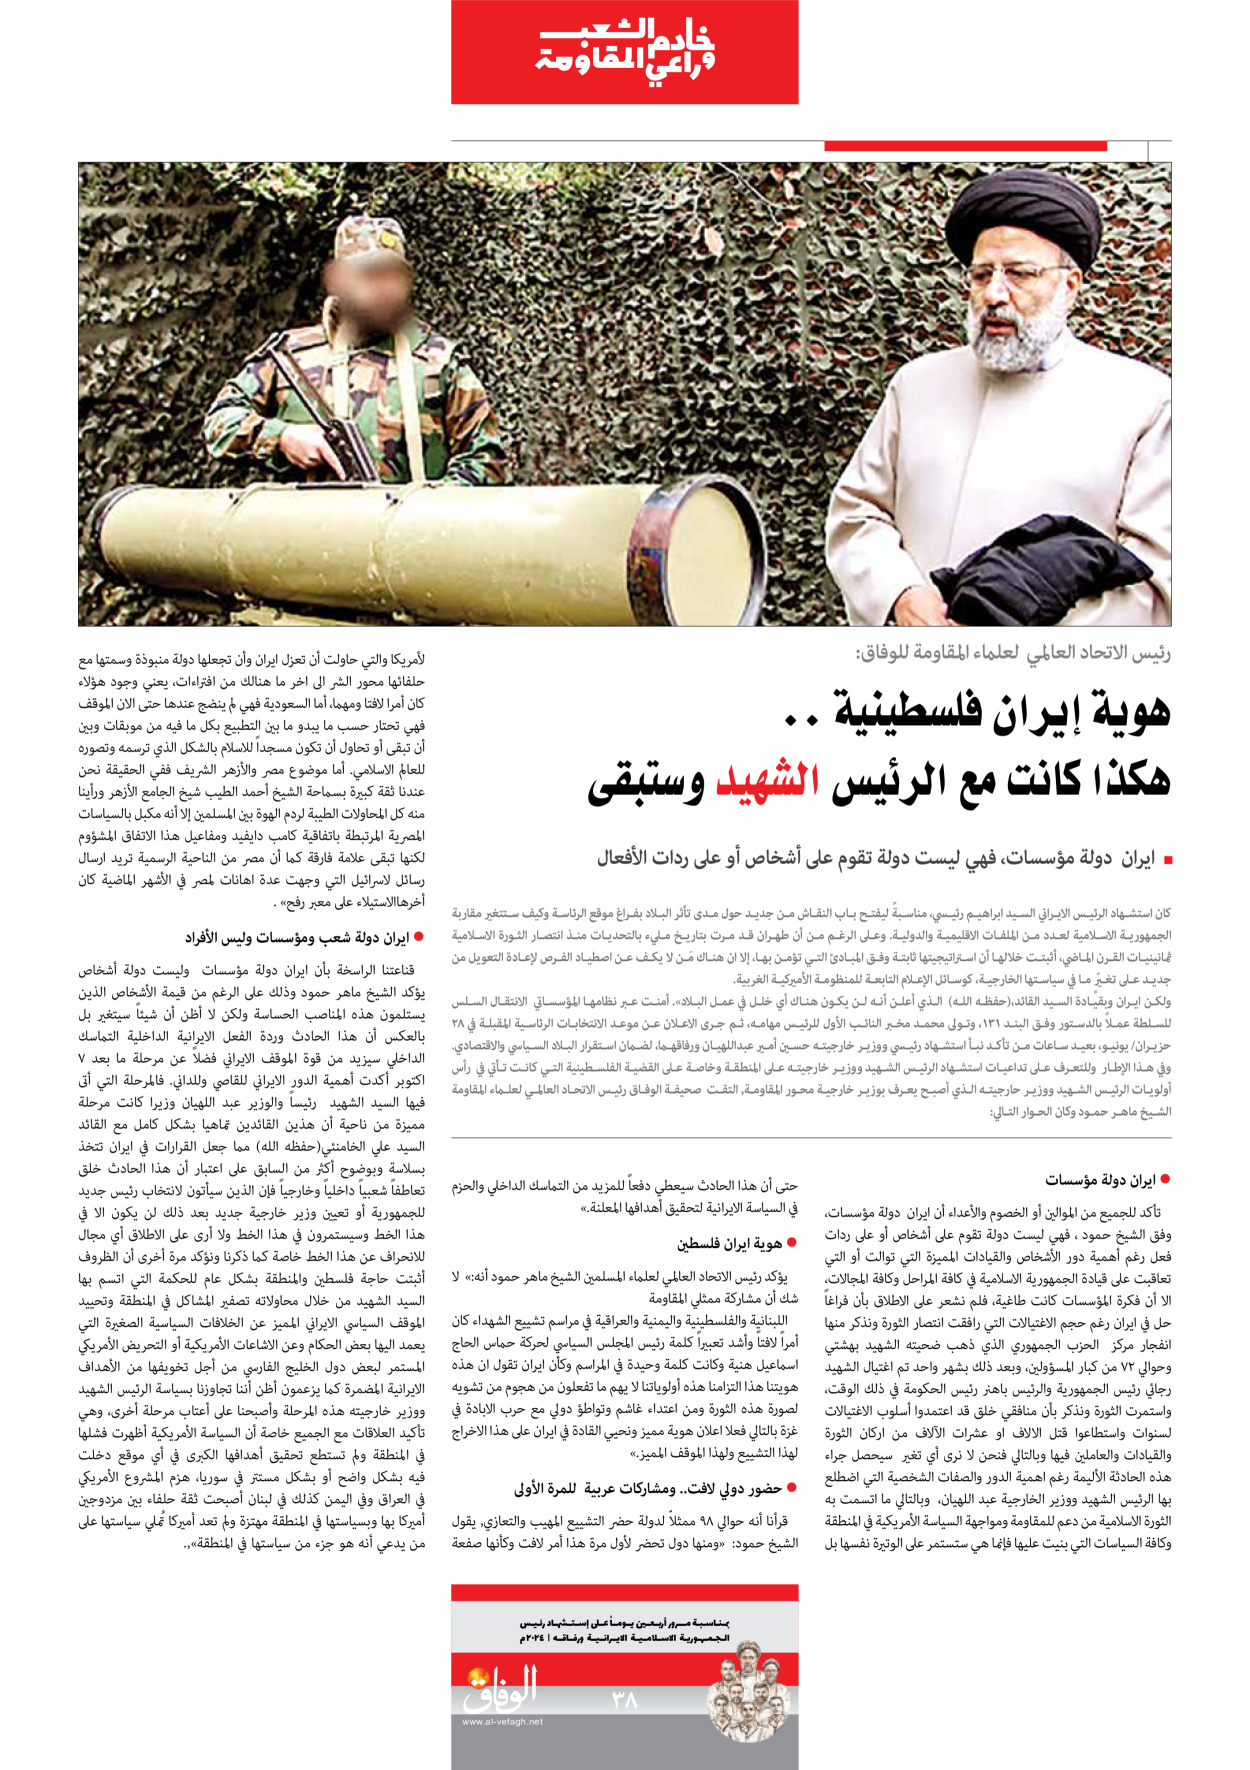 صحیفة ایران الدولیة الوفاق - ملحق ویژه نامه چهلم شهید رییسی - ٢٩ يونيو ٢٠٢٤ - الصفحة ۳۸